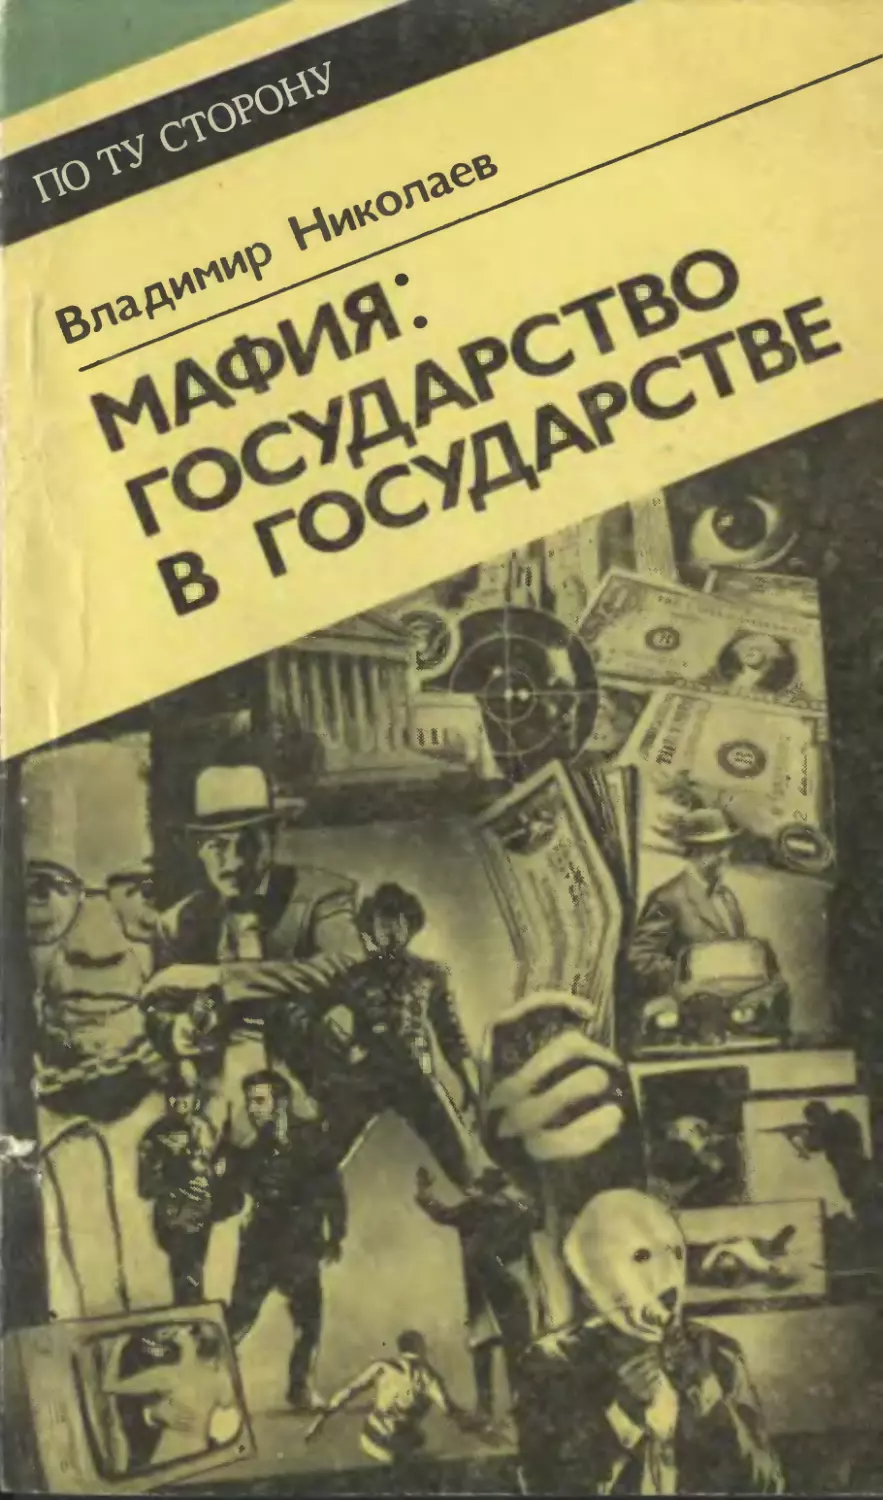 Читать книги про мафию. Советская мафия книга. Книги про итальянскую мафию. Книги про мафию Художественные. Мафия обложка книги.